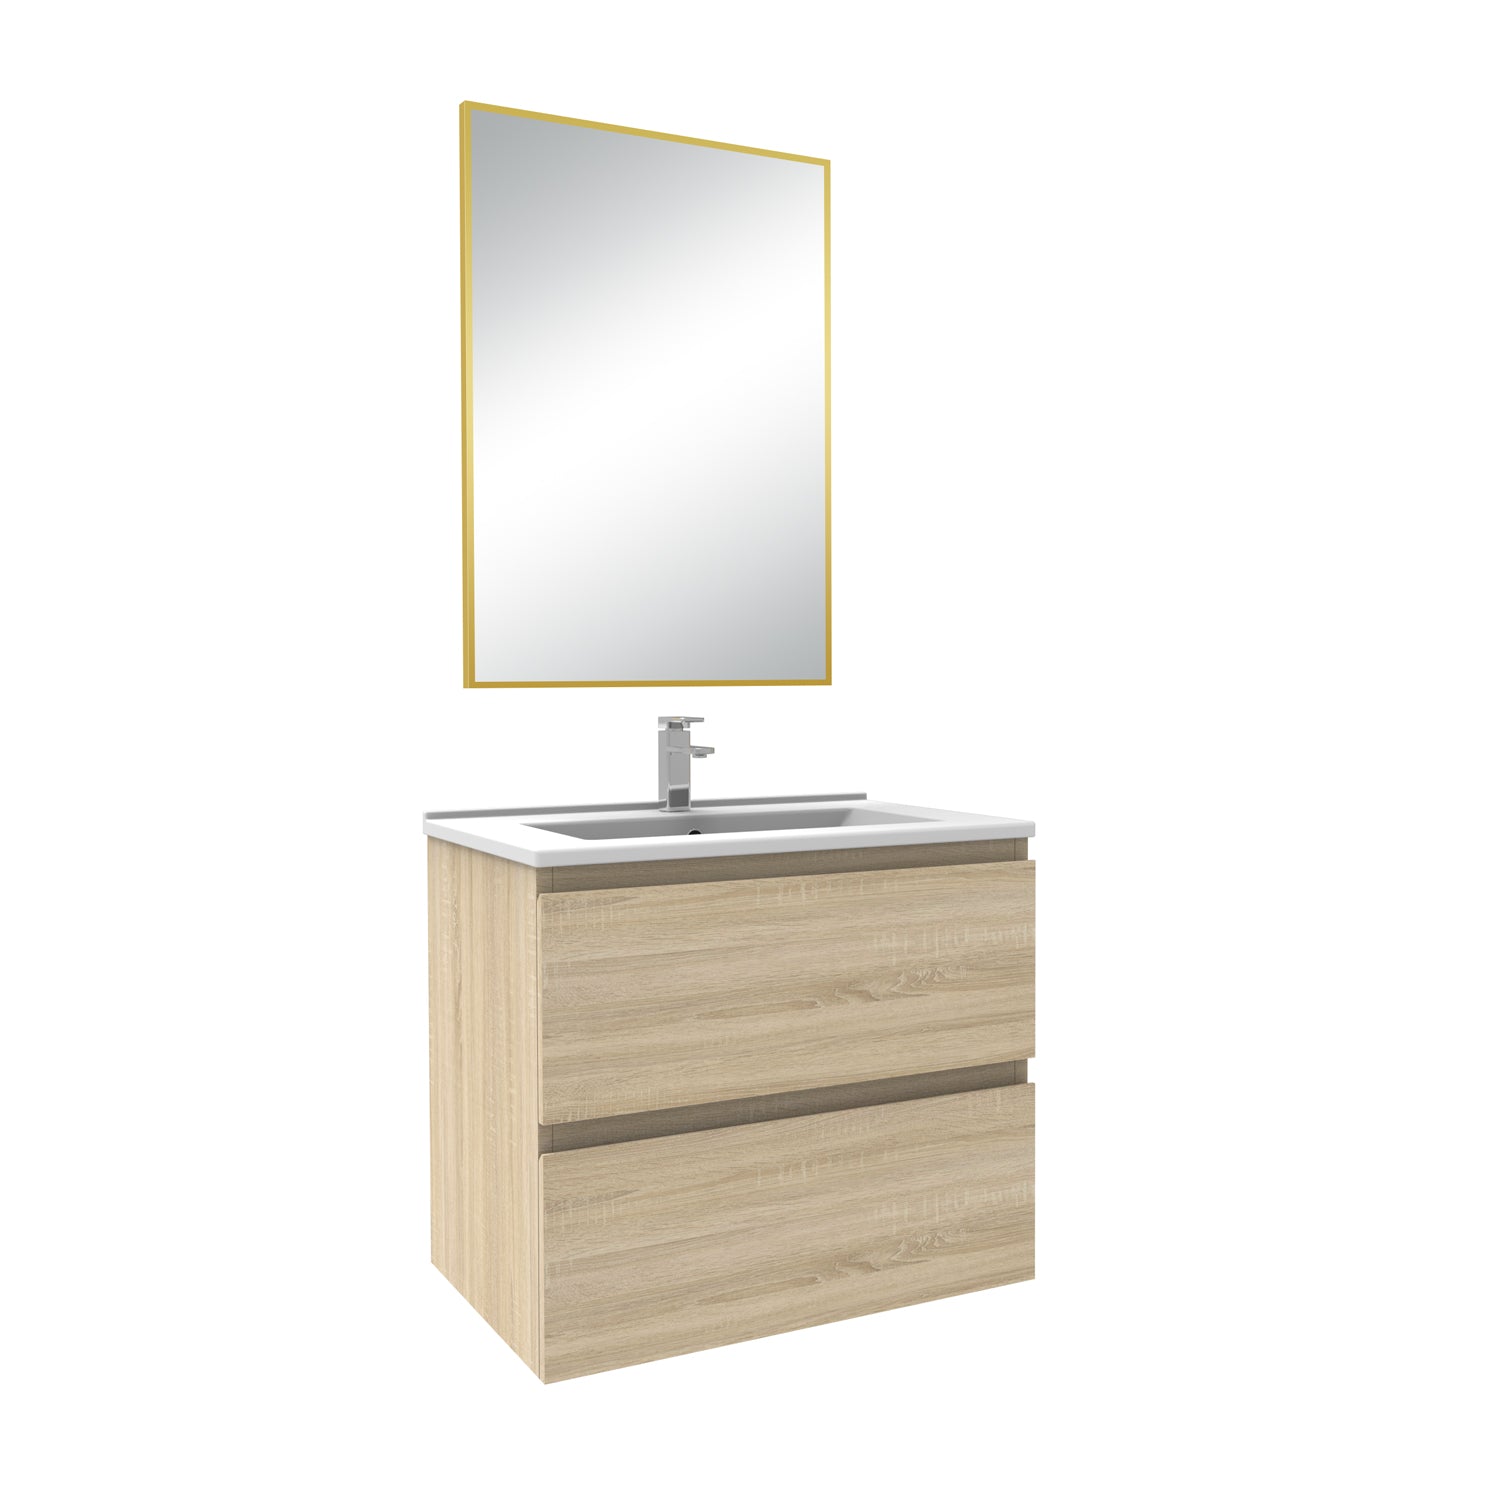 Meuble salle de bain simple vasque 50cm blanc/Anthracite/Chêne Wotan meuble acve miroir - Aica -Livraison gratuite